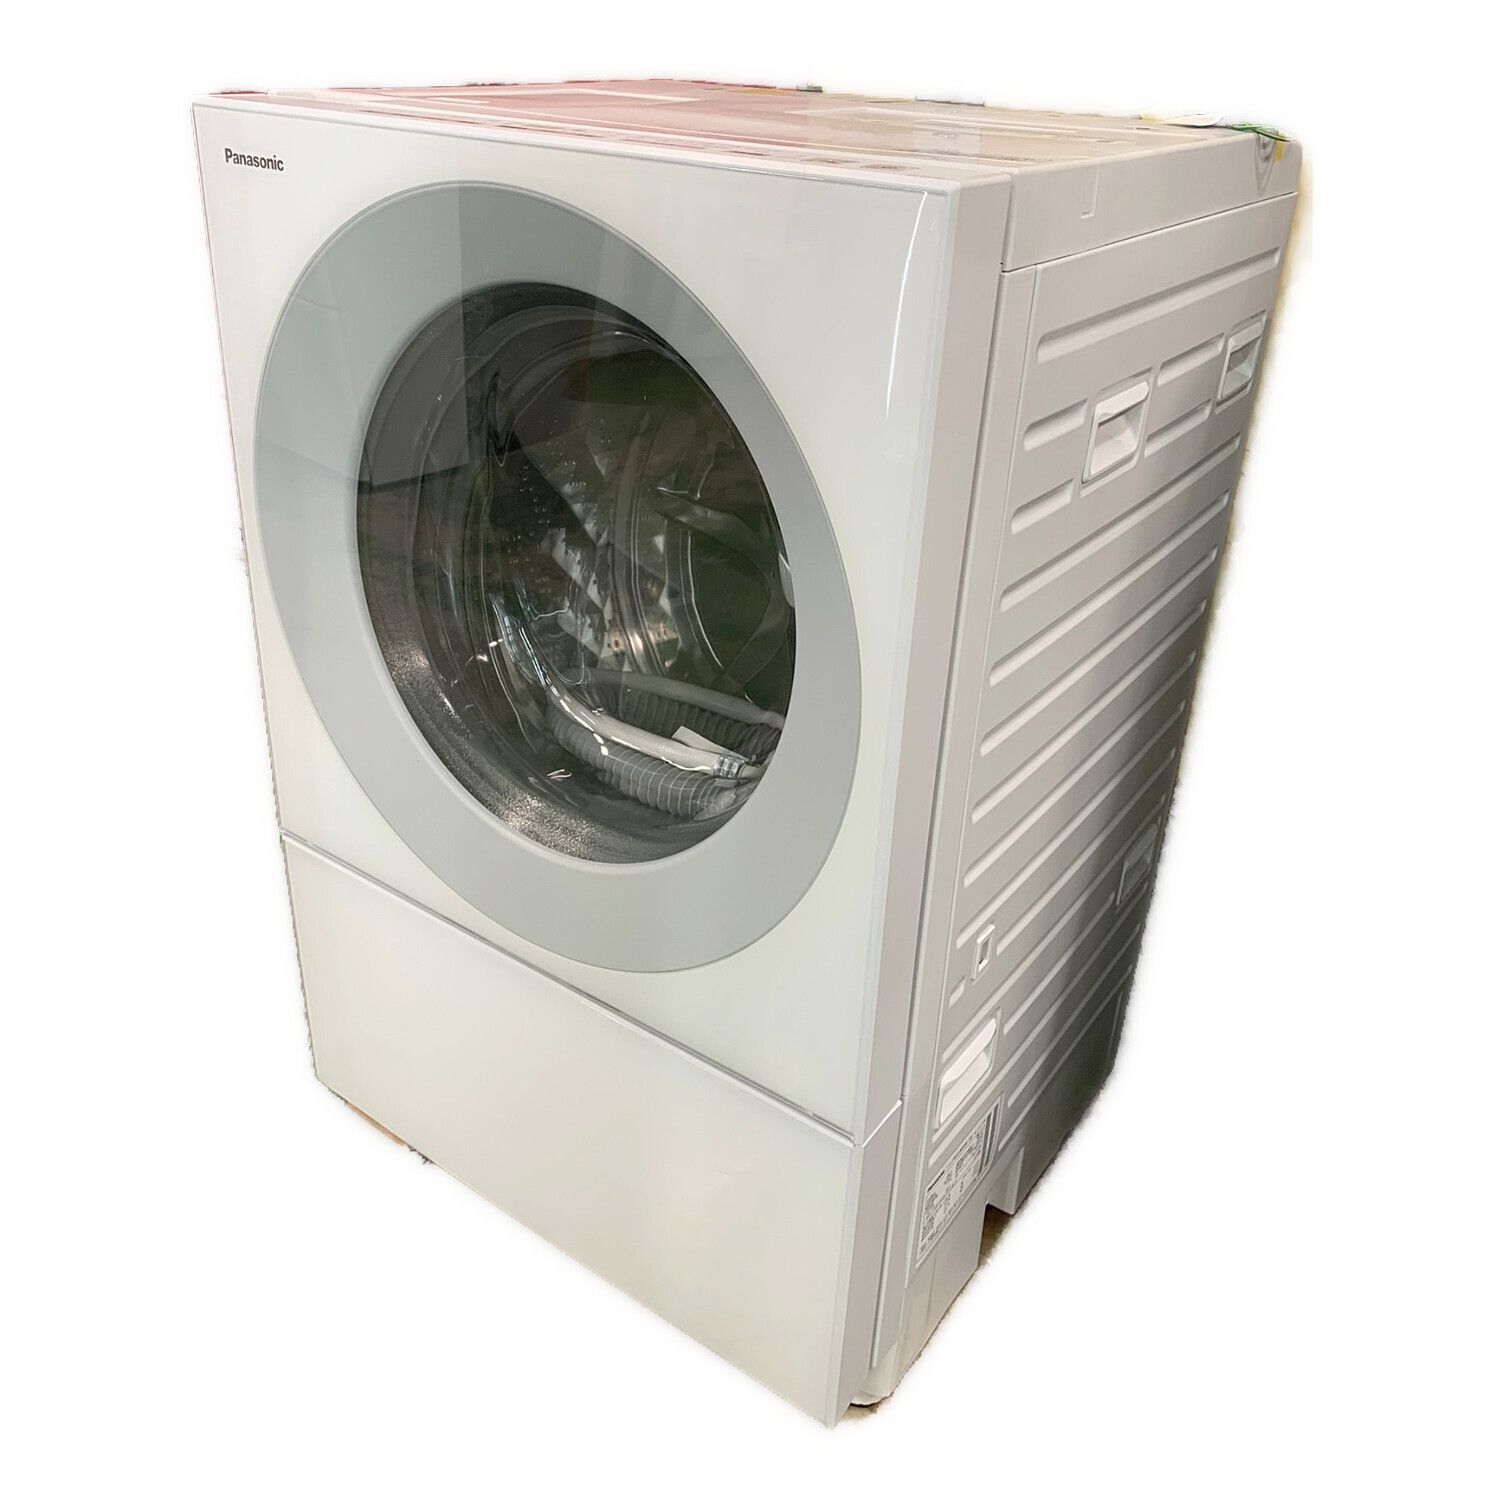 Panasonic (パナソニック) ドラム式洗濯乾燥機 輸送用ボルト有 7.0kg 